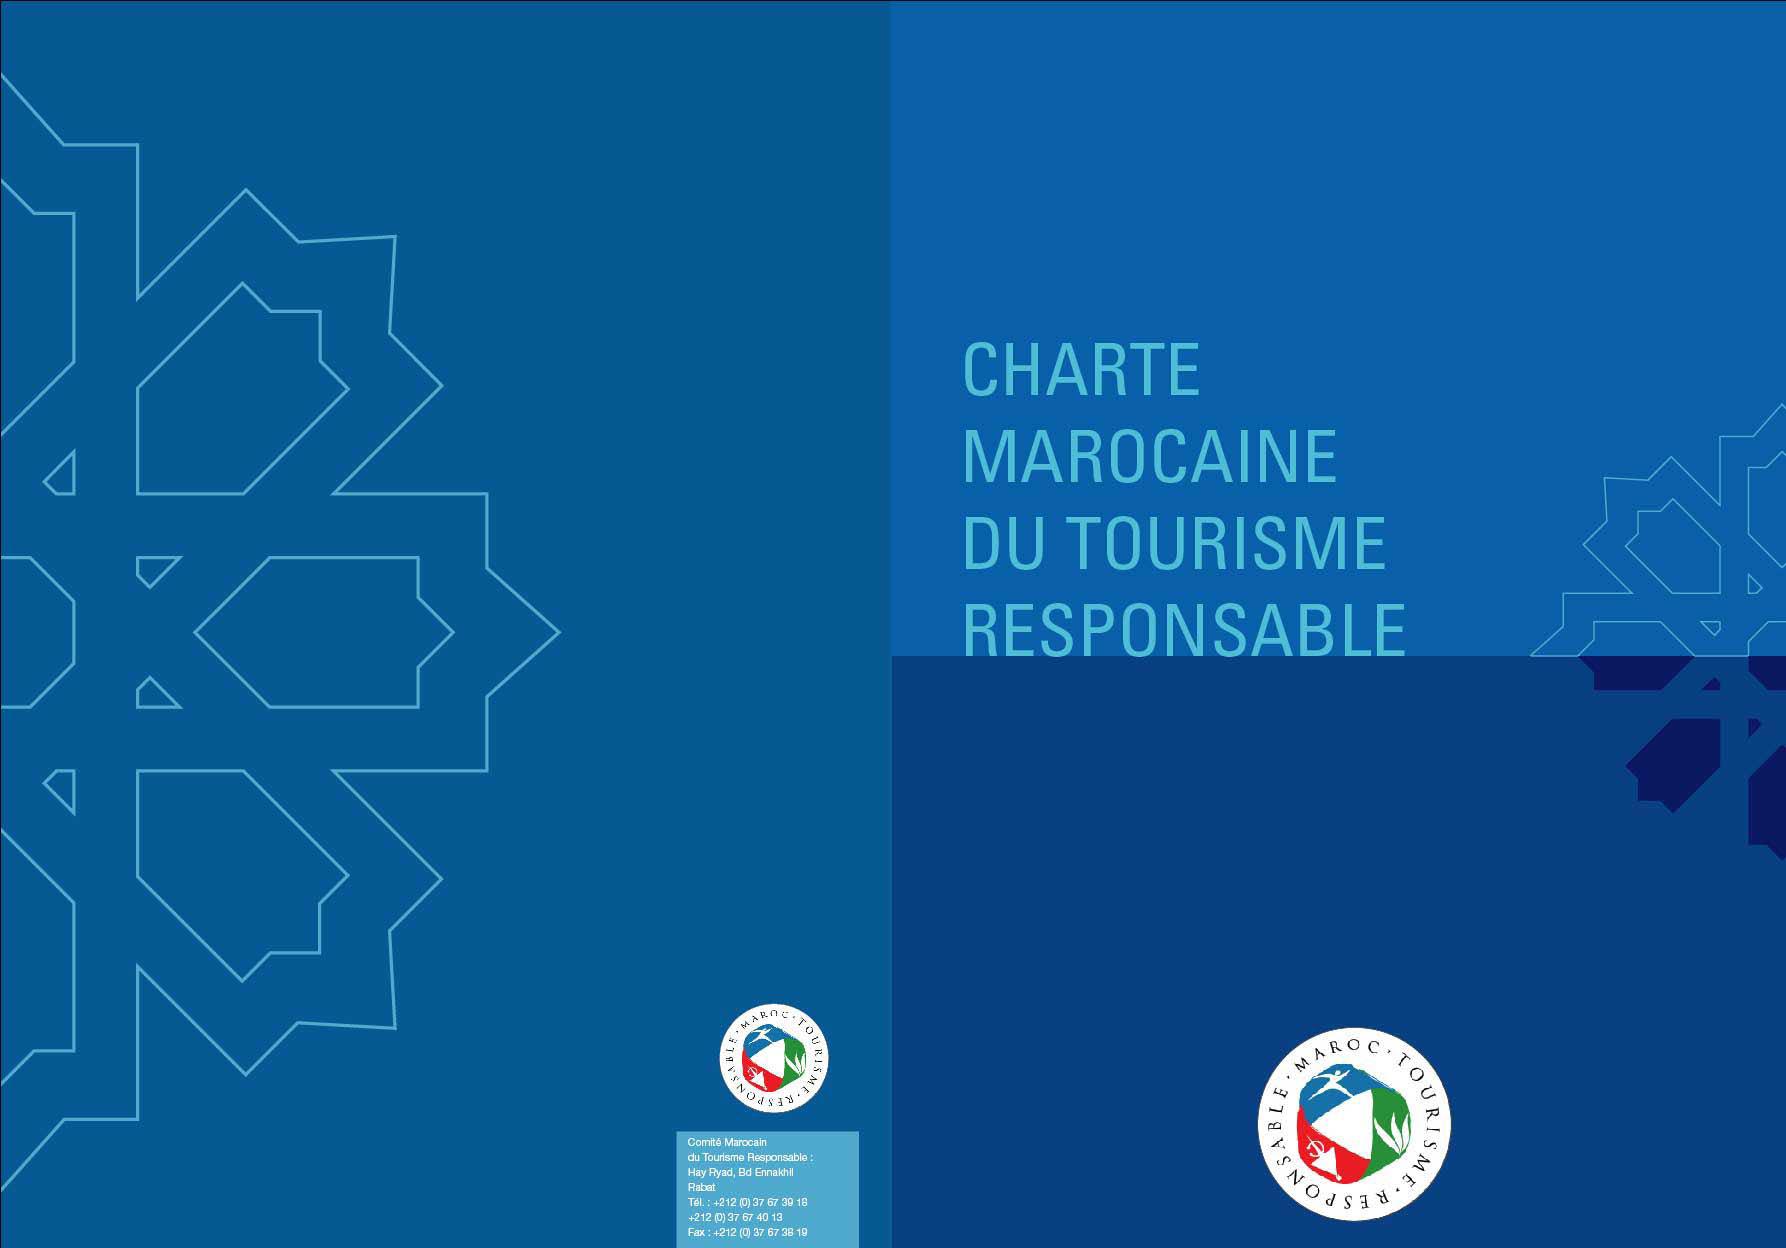 Charte Marocaine du Tourisme Responsable